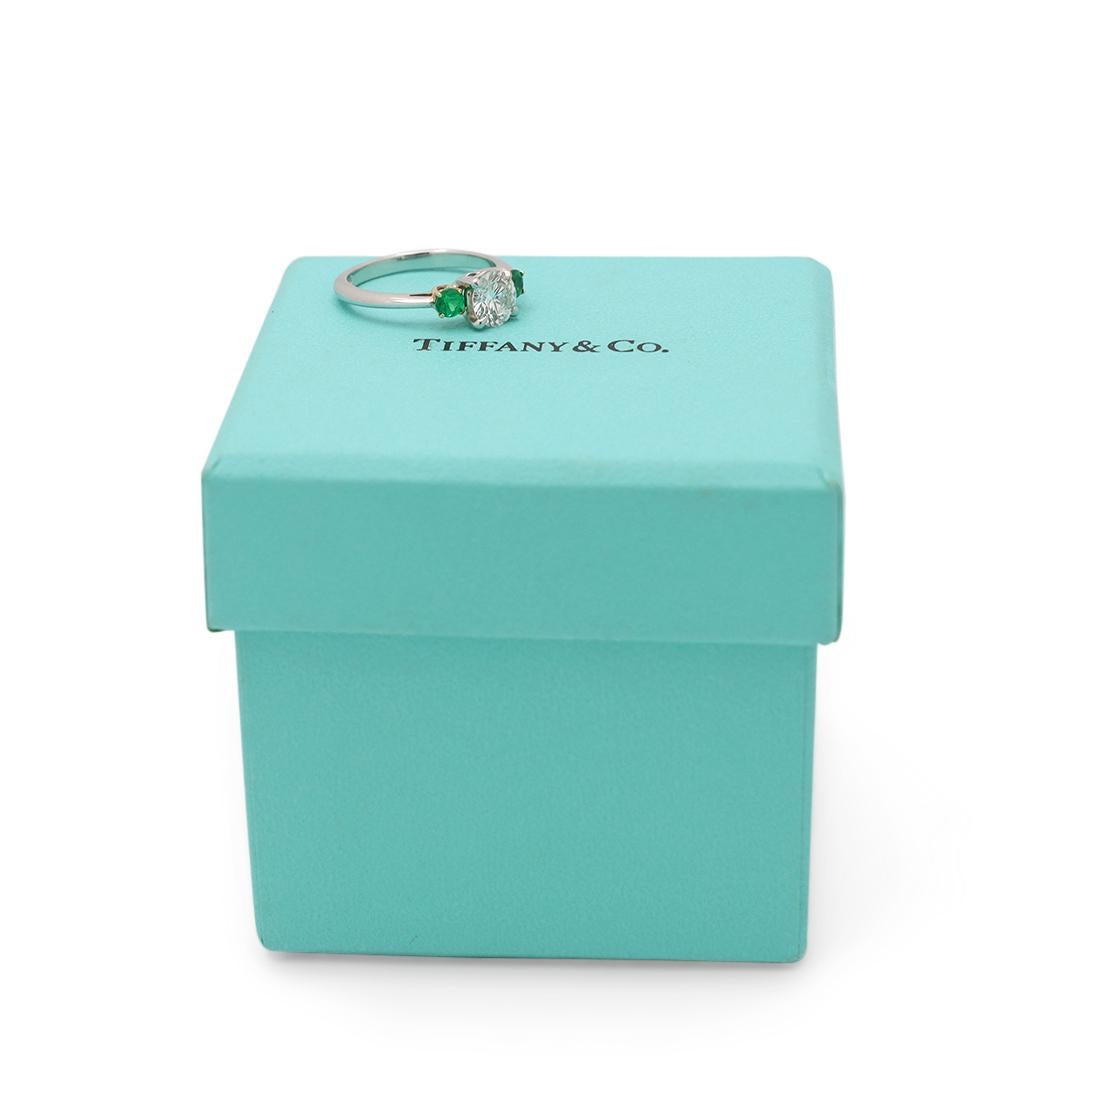 Brilliant Cut Tiffany & Co. Diamond and Emerald Ring